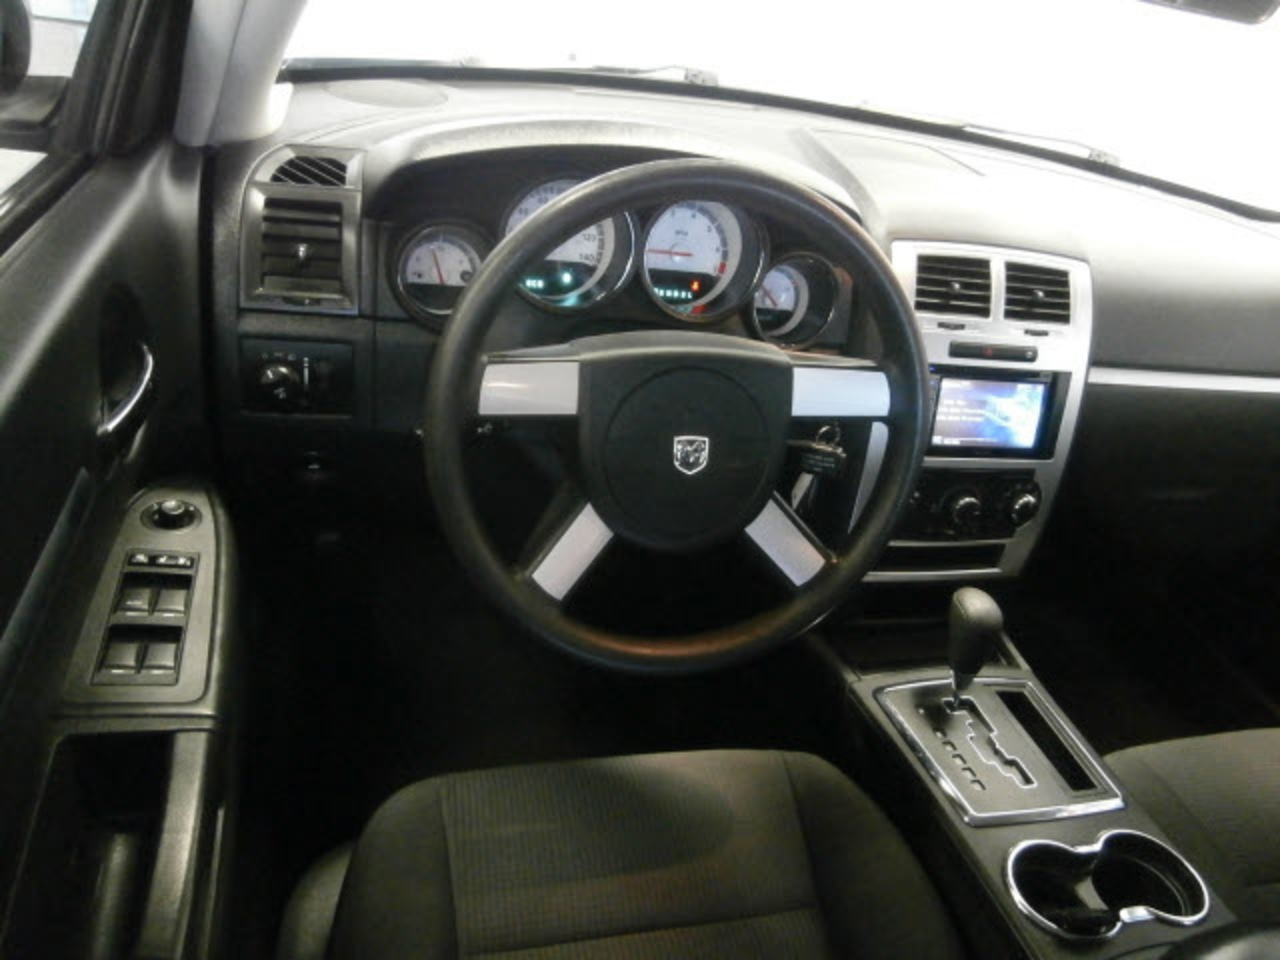 Pre-owned 2010 Dodge Charger SXT Interior Wholesale Inc Nashville ...